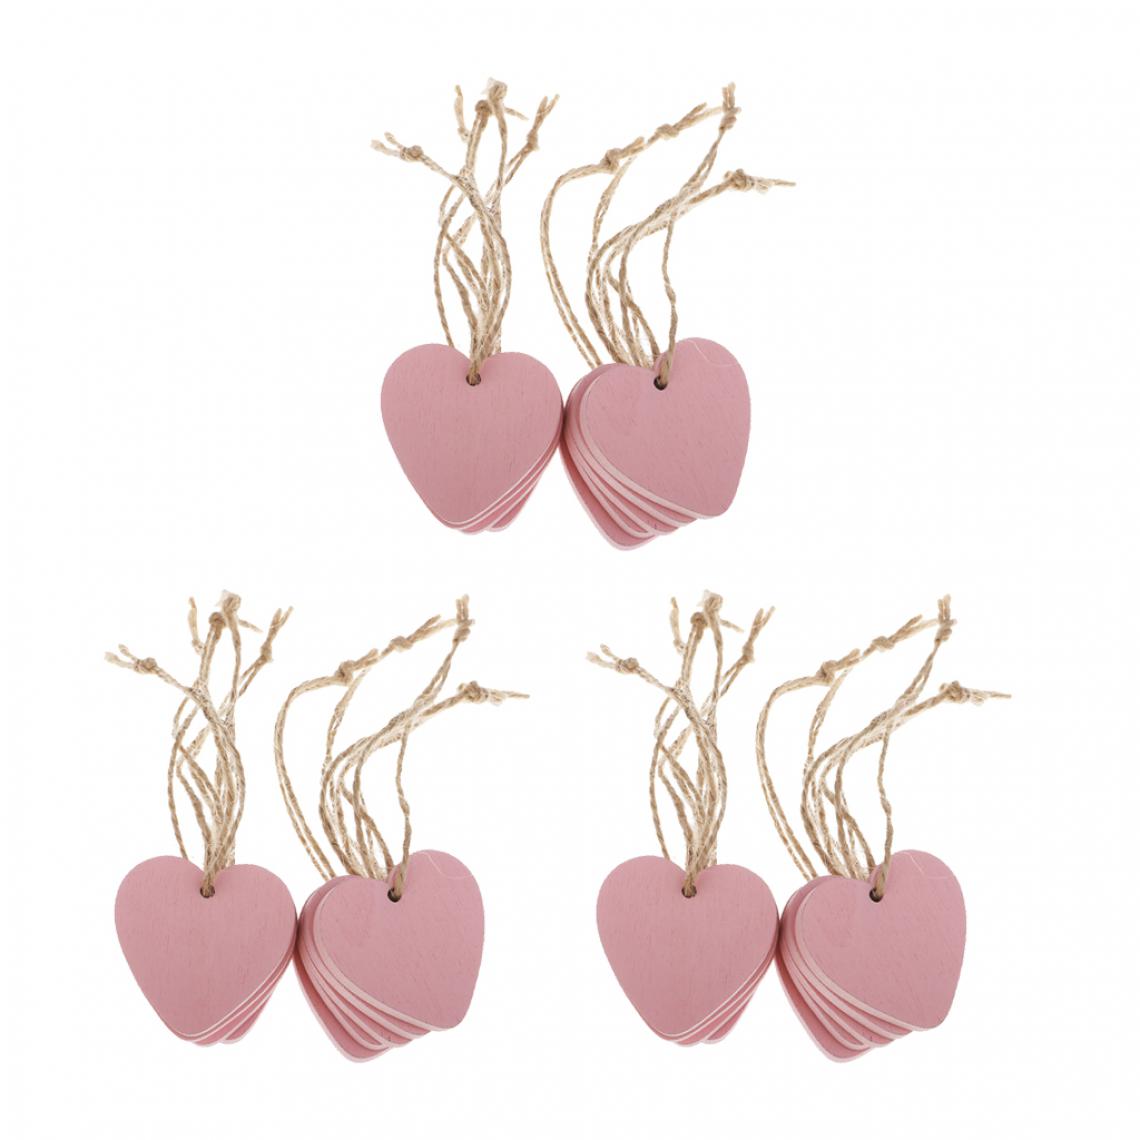 marque generique - 20x étiquettes De Coeur En Bois Peint Rose Suspendus Artisanat Bricolage Décorations Pour La Maison Rose - Objets déco